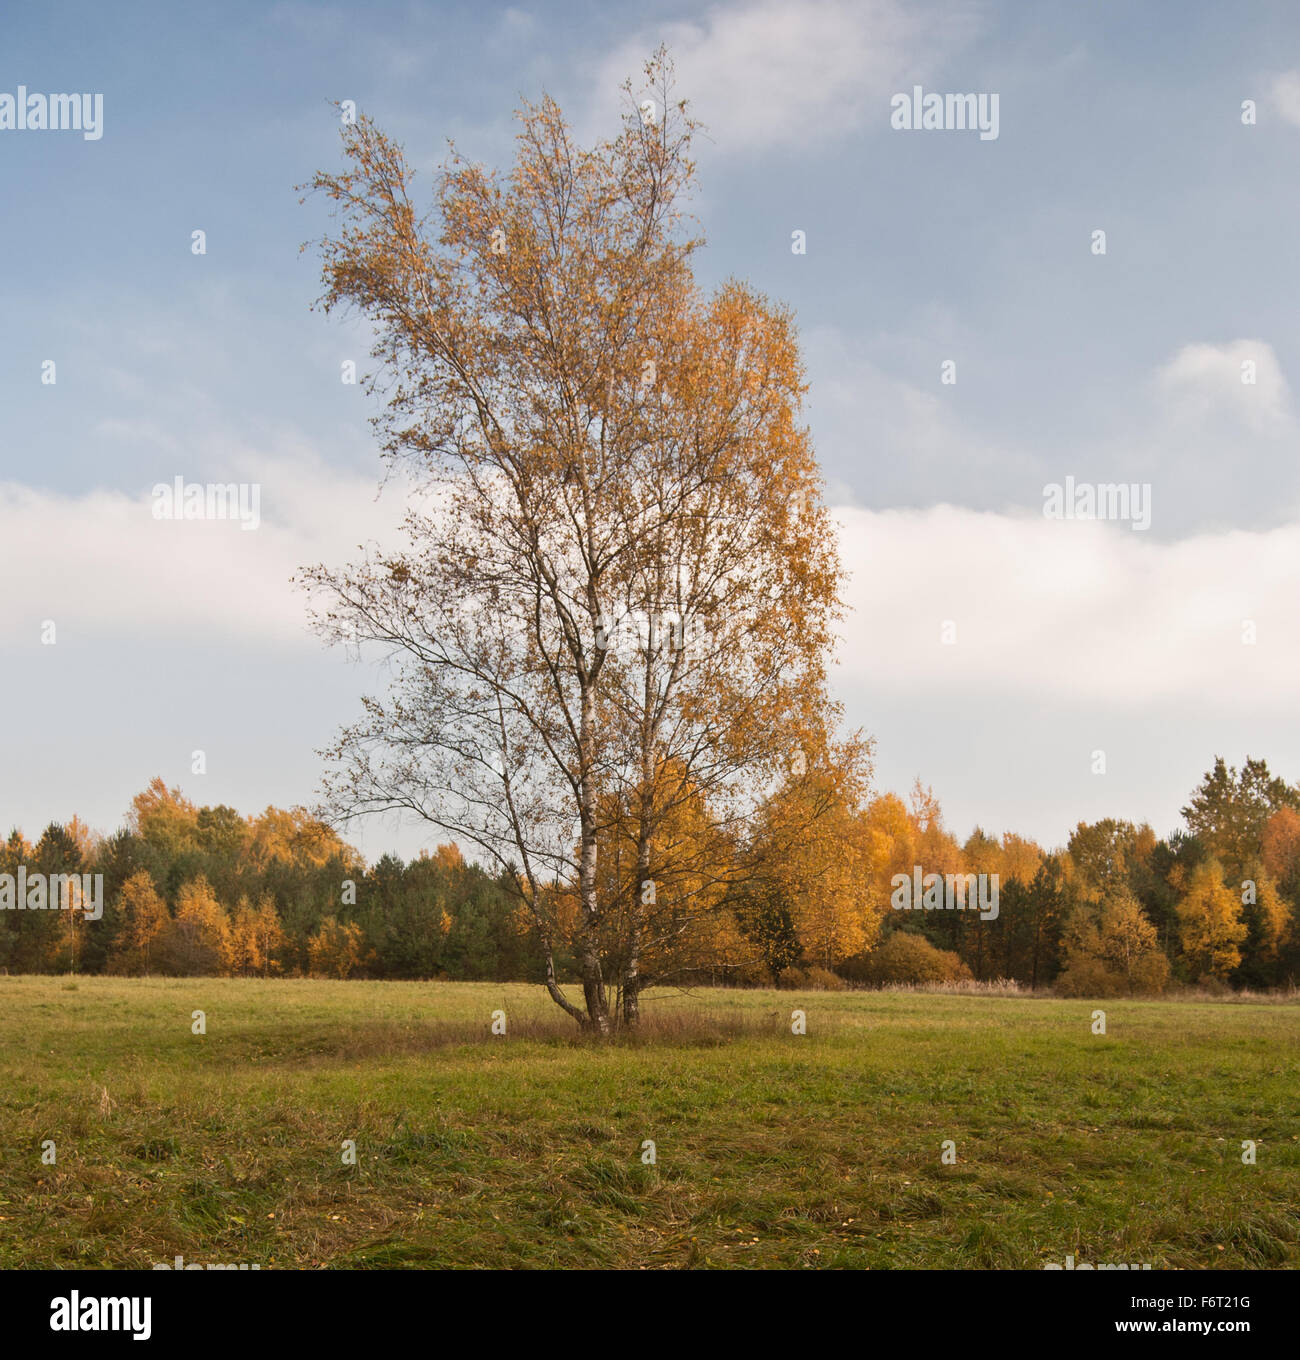 Bouleau isolé sur prairie avec des forêts colorées sur l'arrière-plan lors de nice journée d'automne près de Plauen en Saxe Banque D'Images